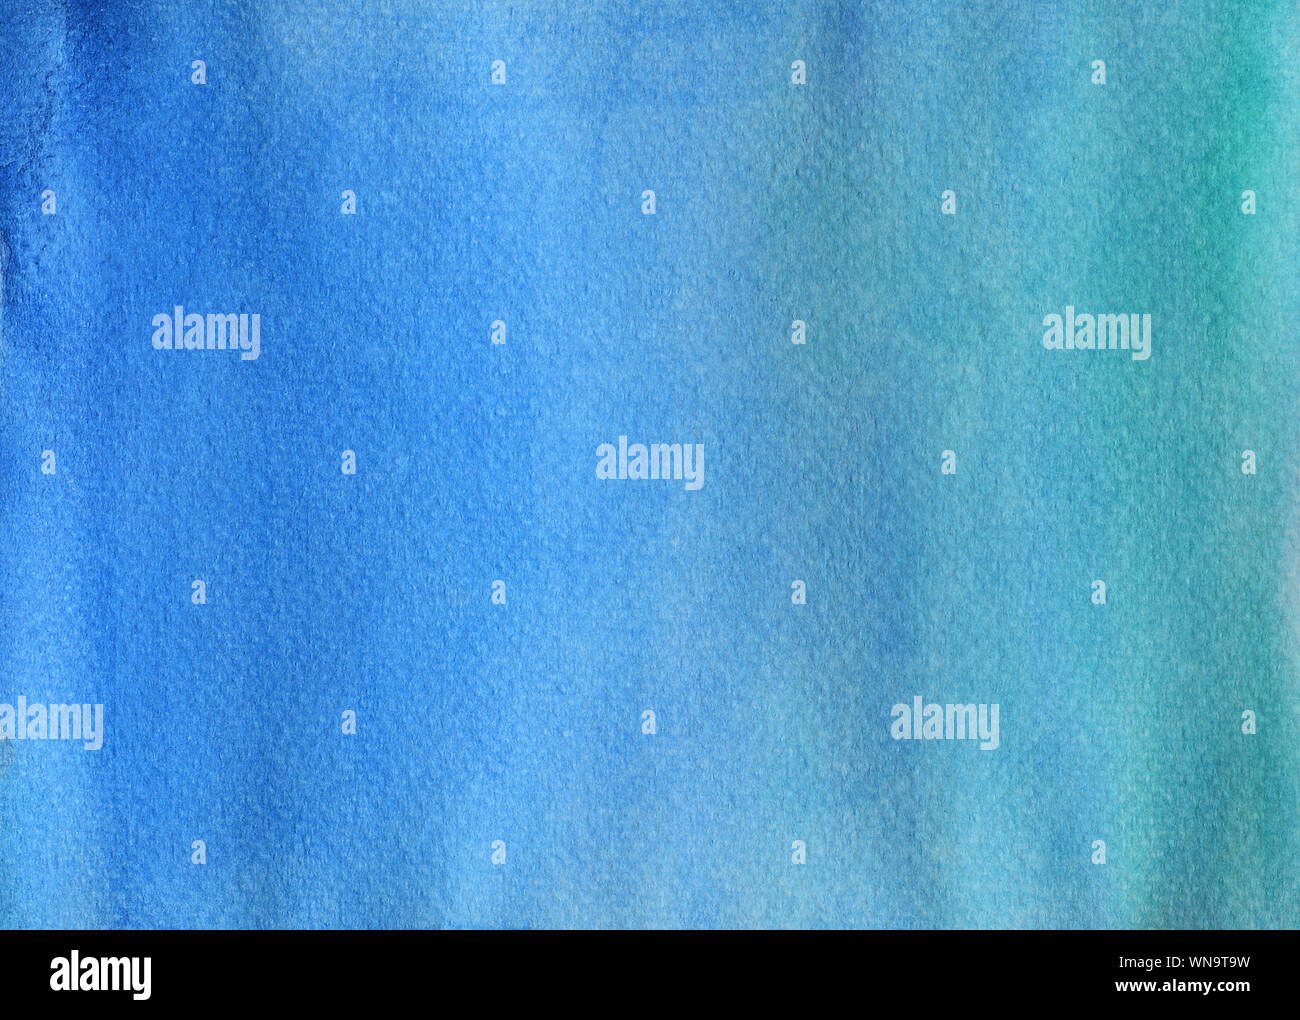 Farbverlauf von Blau zu Grün, Illustration abstrakt und hellen Hintergrund von Hand zeichnen Aquarell auf Papier Stockfoto